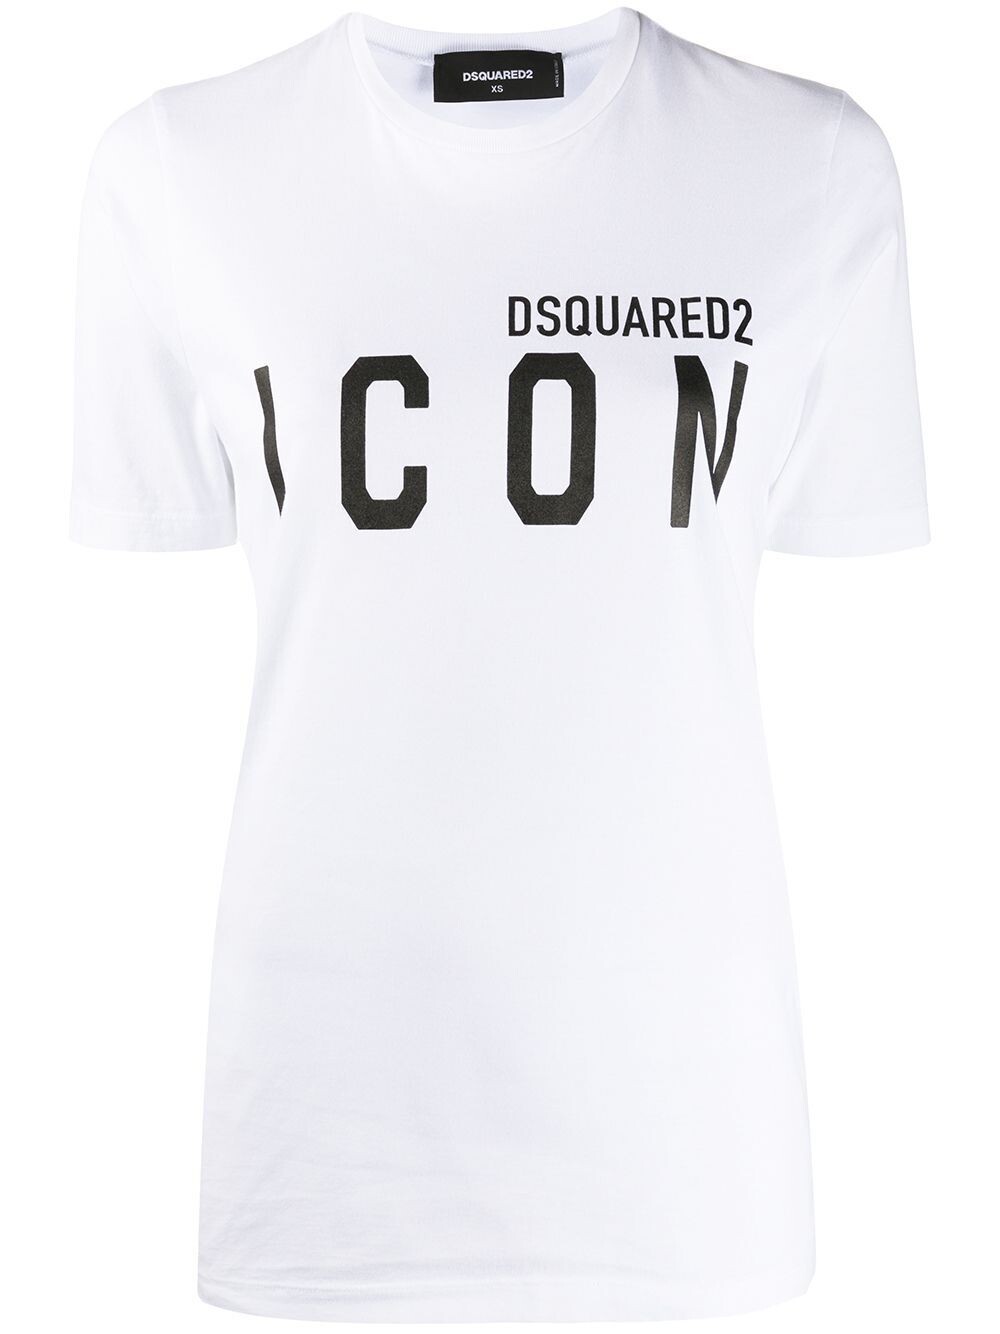 T-Shirt ICON white-black